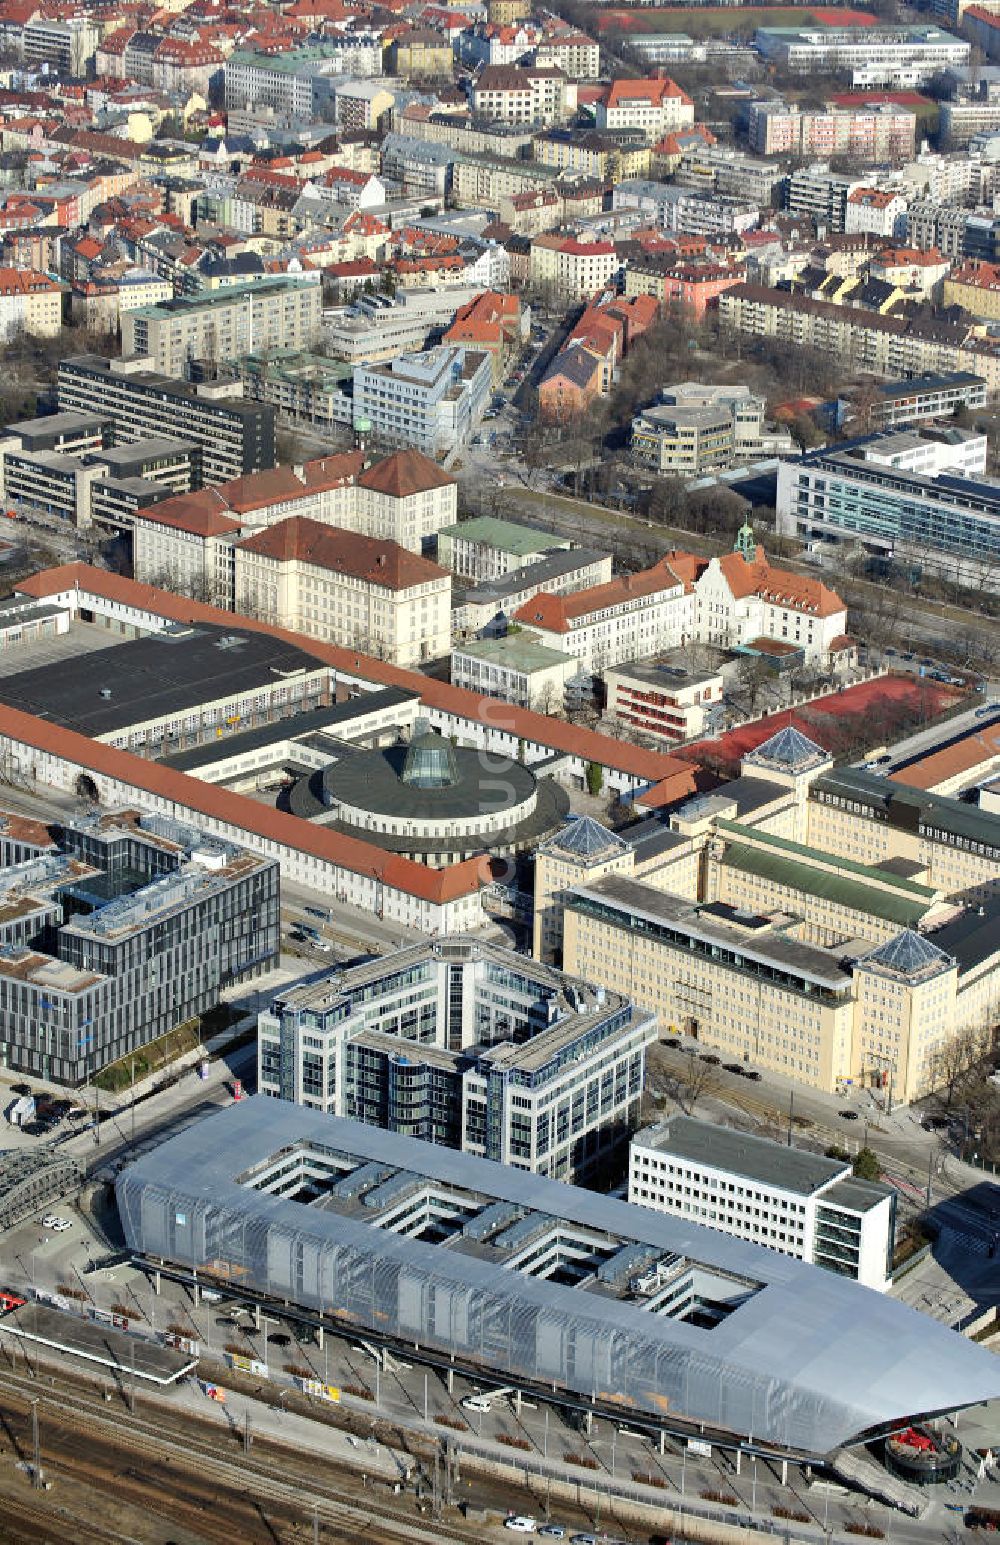 München aus der Vogelperspektive: Die Arnulfstraße in München mit dem Zentralen Omnibusbahnhofs (ZOB) und dem Brief- und Frachtzentrum